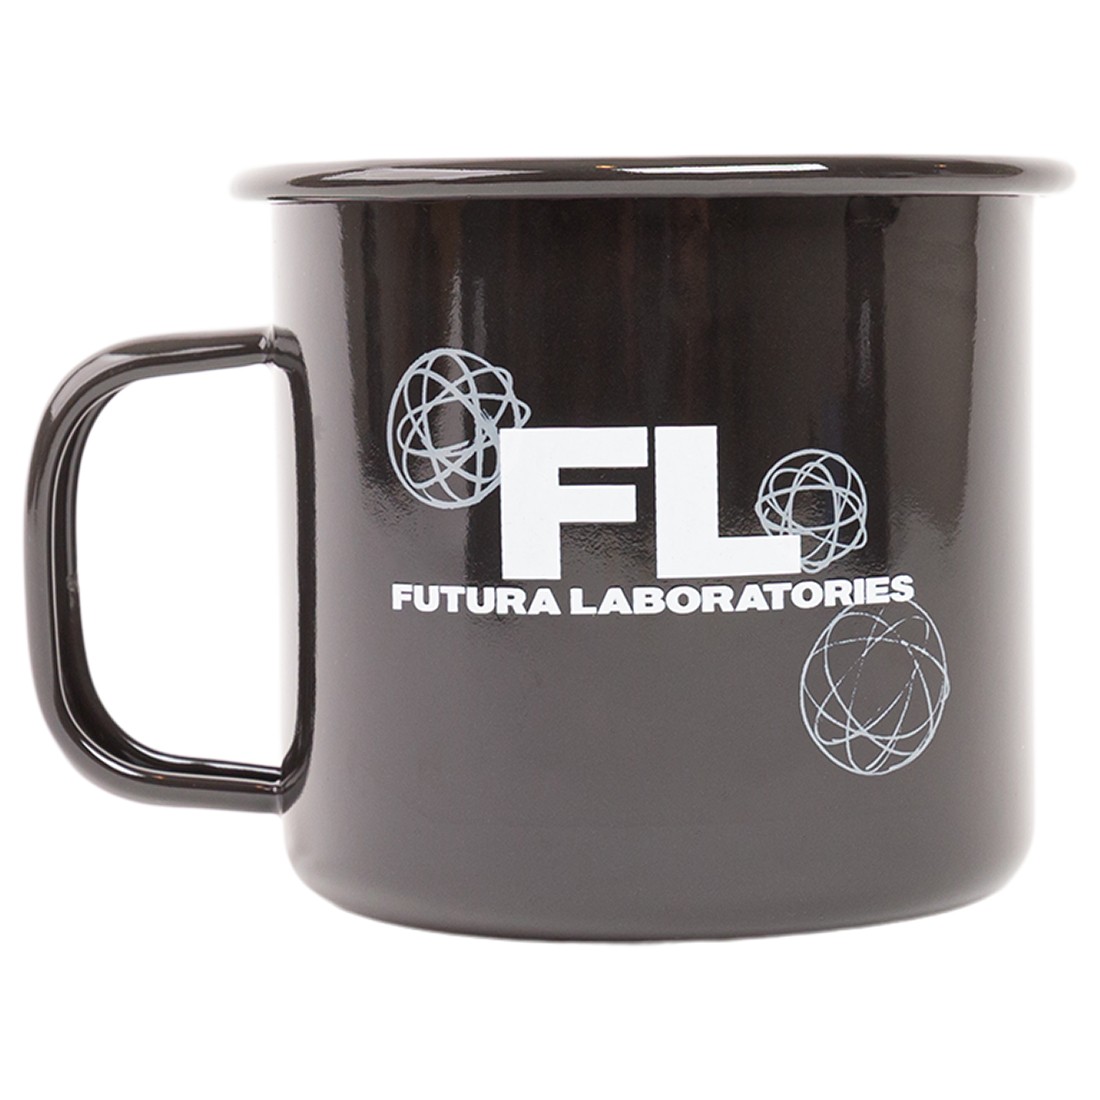 Futura Laboratories Mug (black)